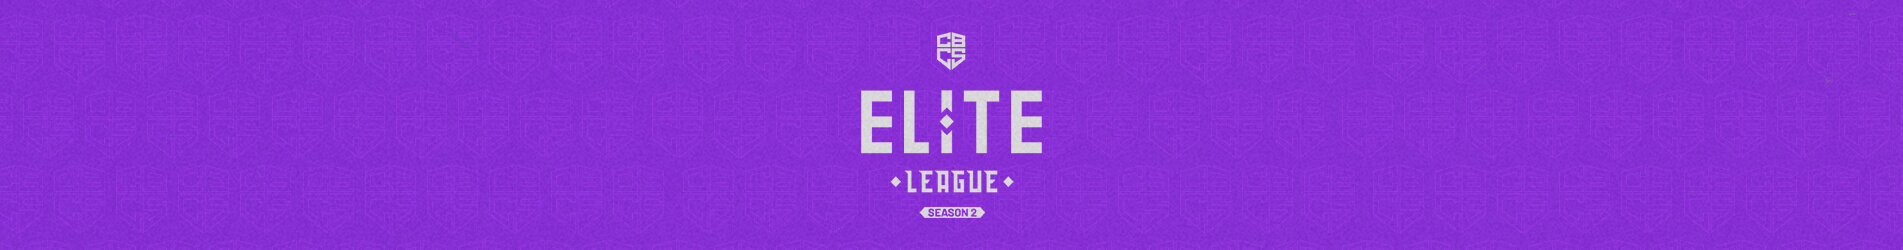 CS:GO: Play-in do CBCS Elite League 2 começa hoje